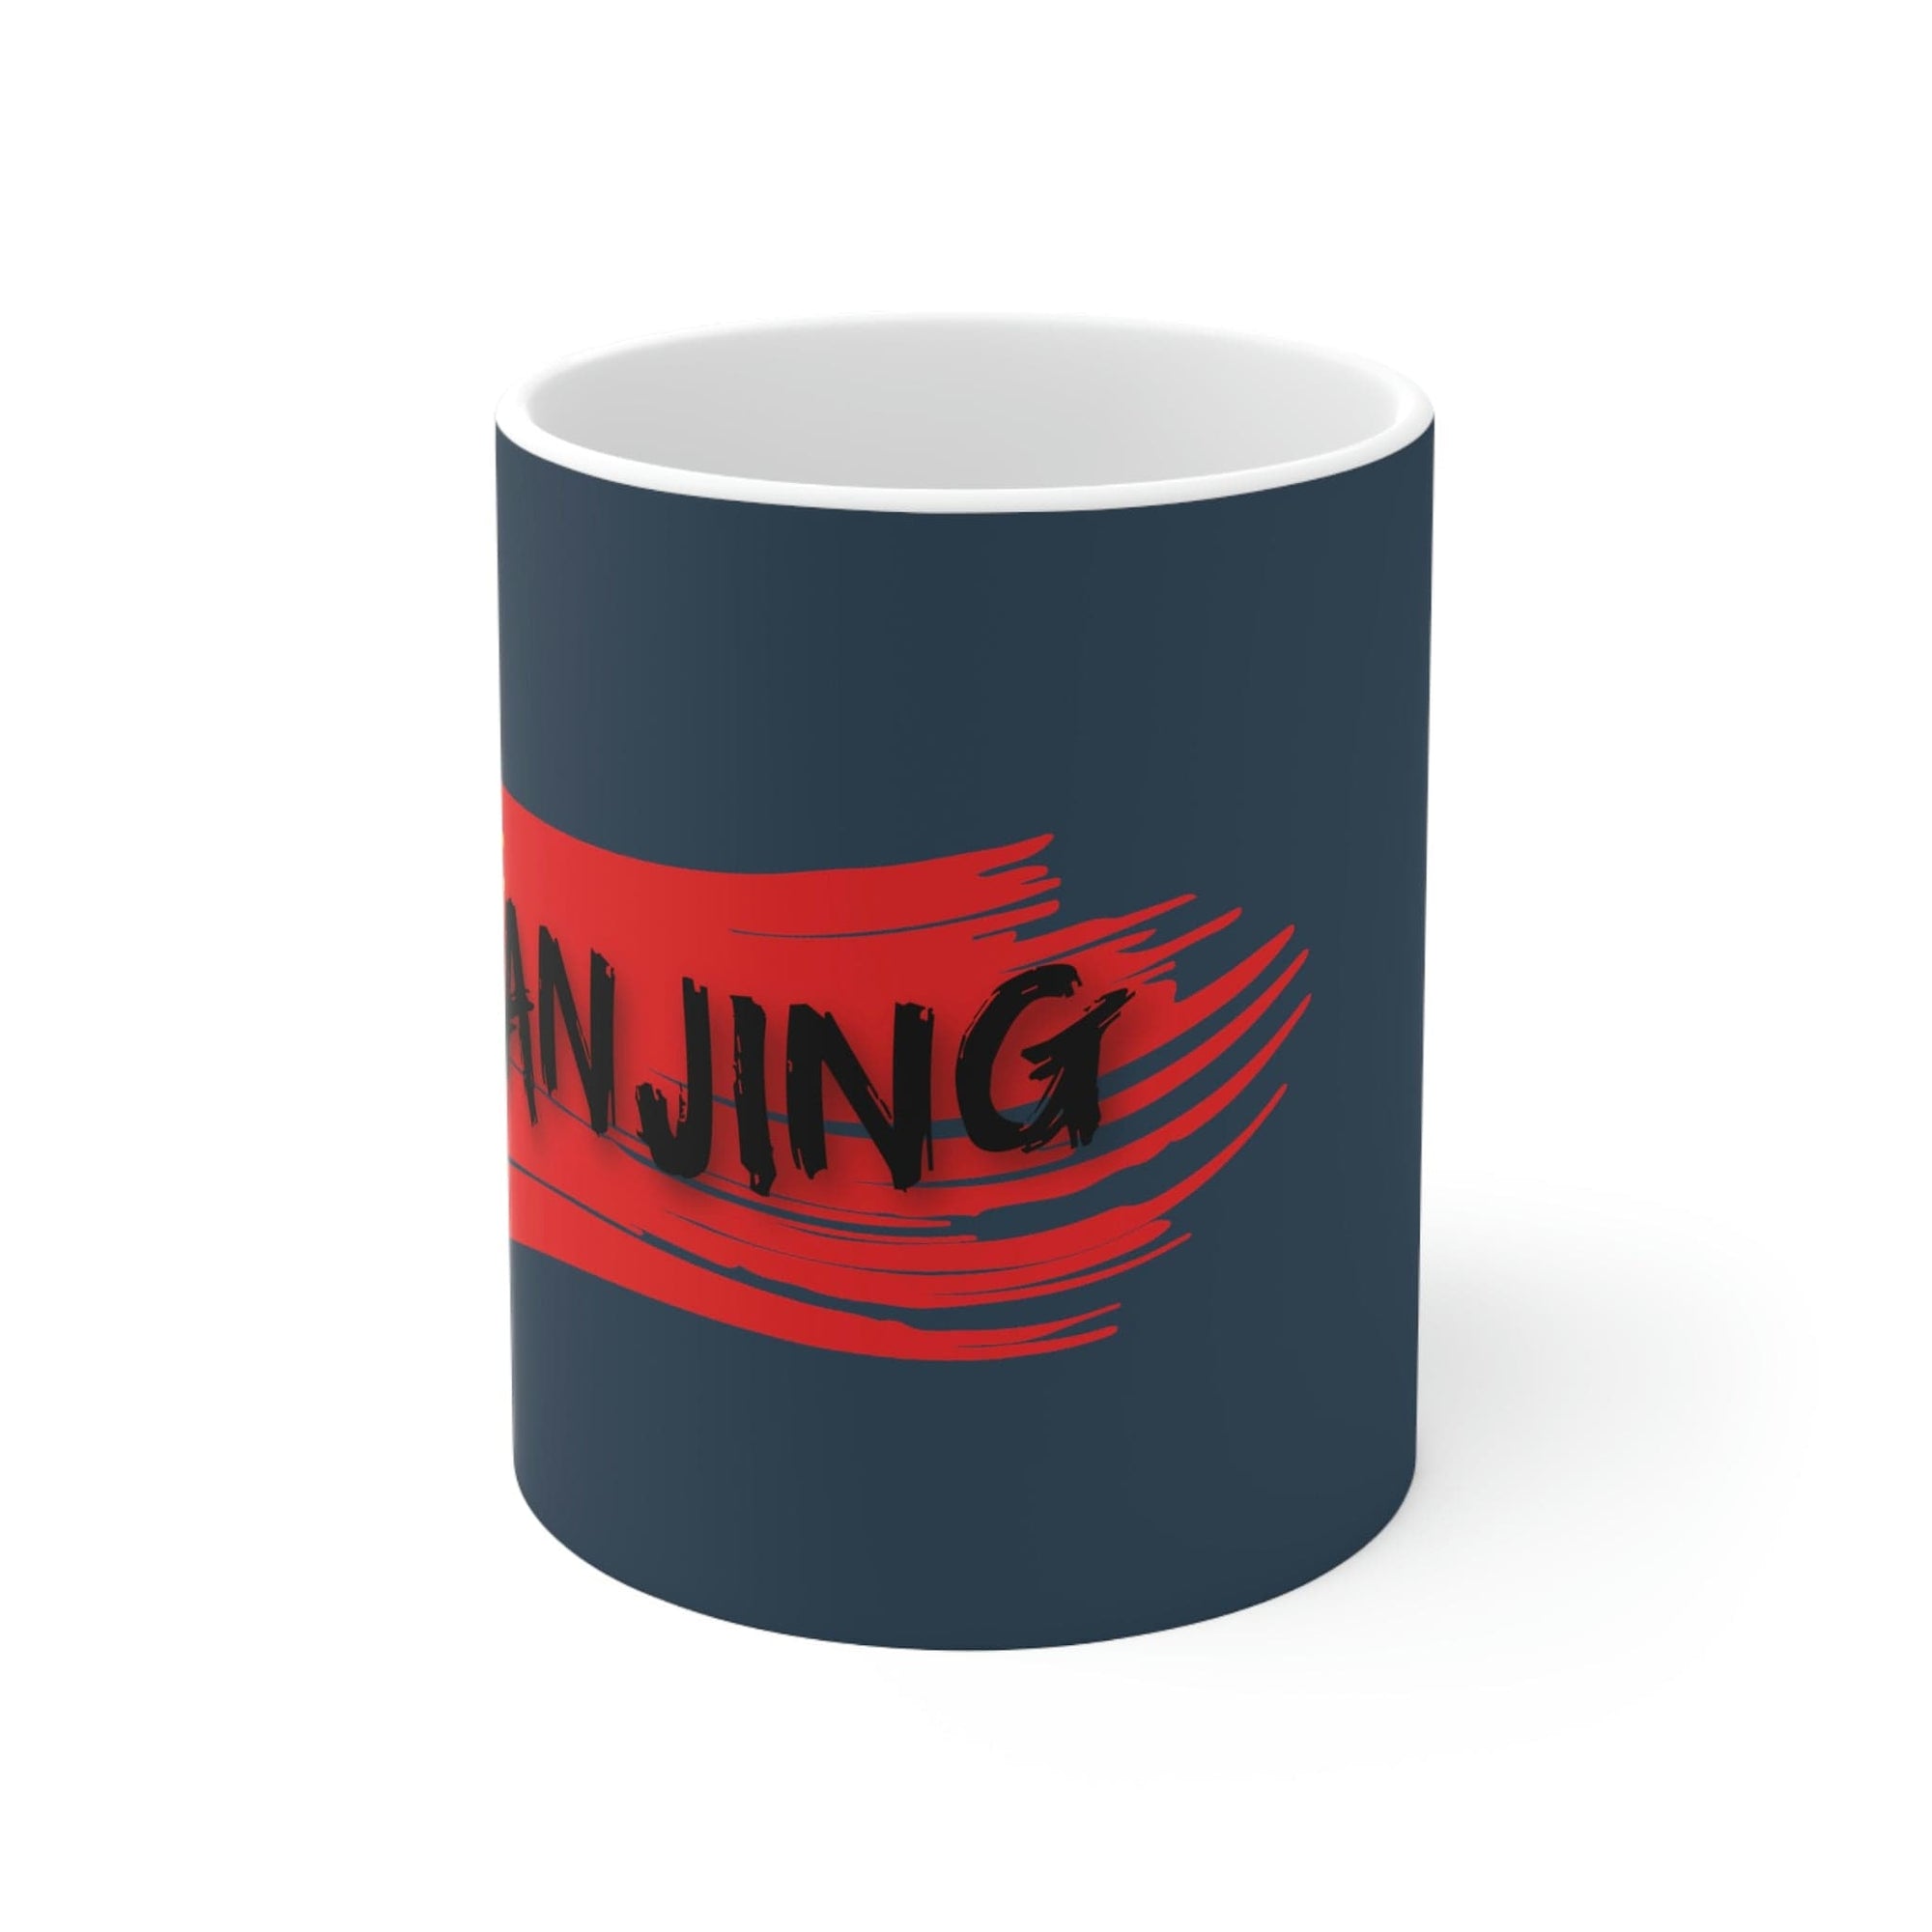 NANJING - Awesome Ceramic Mug, Exclusive Design